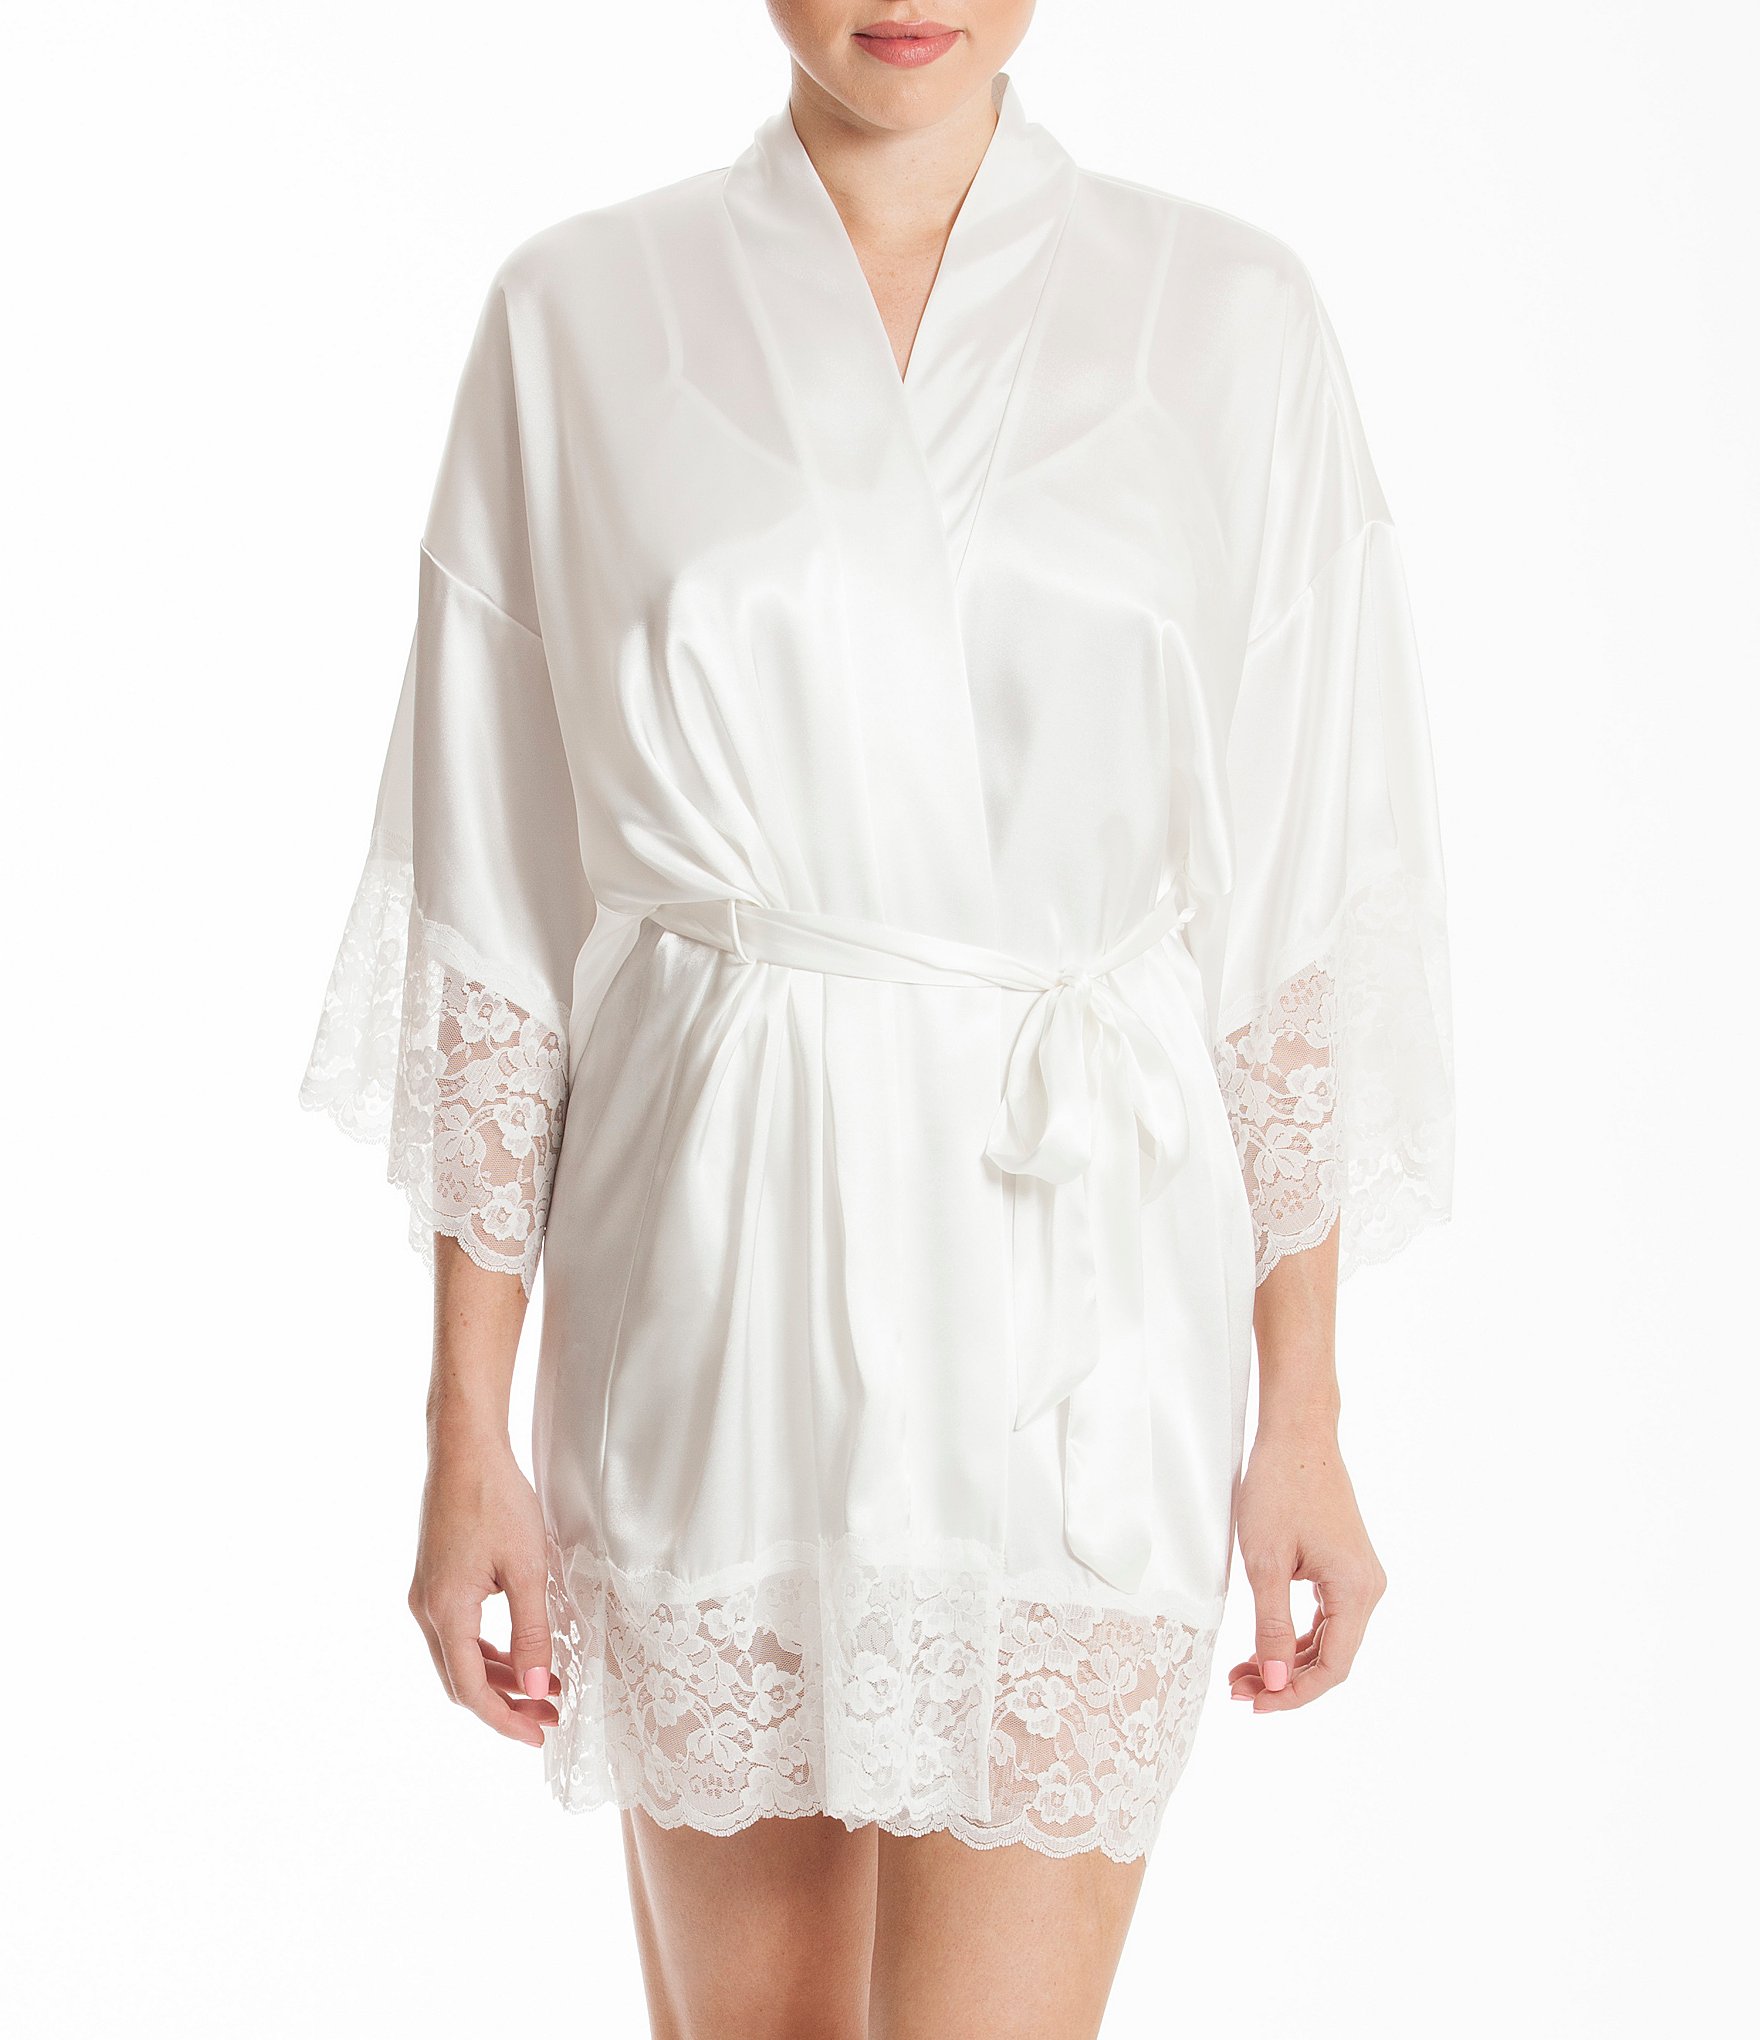 white bridal robe lace